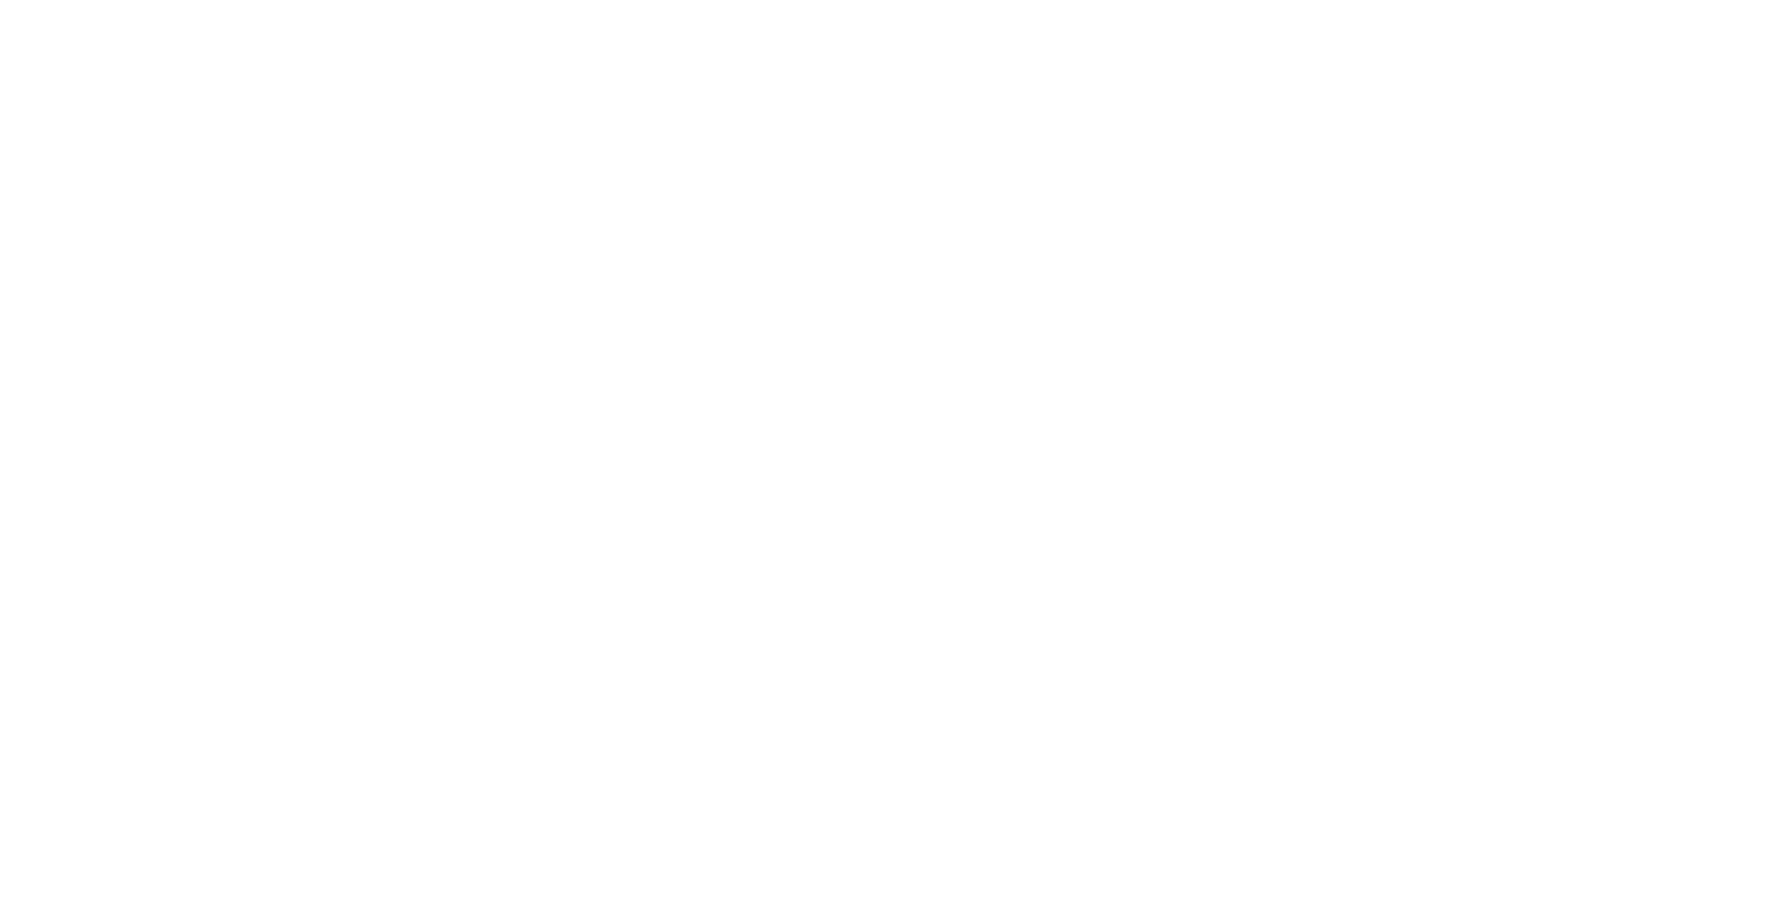 Logo der Firma Häng, die Hängematten produziert.